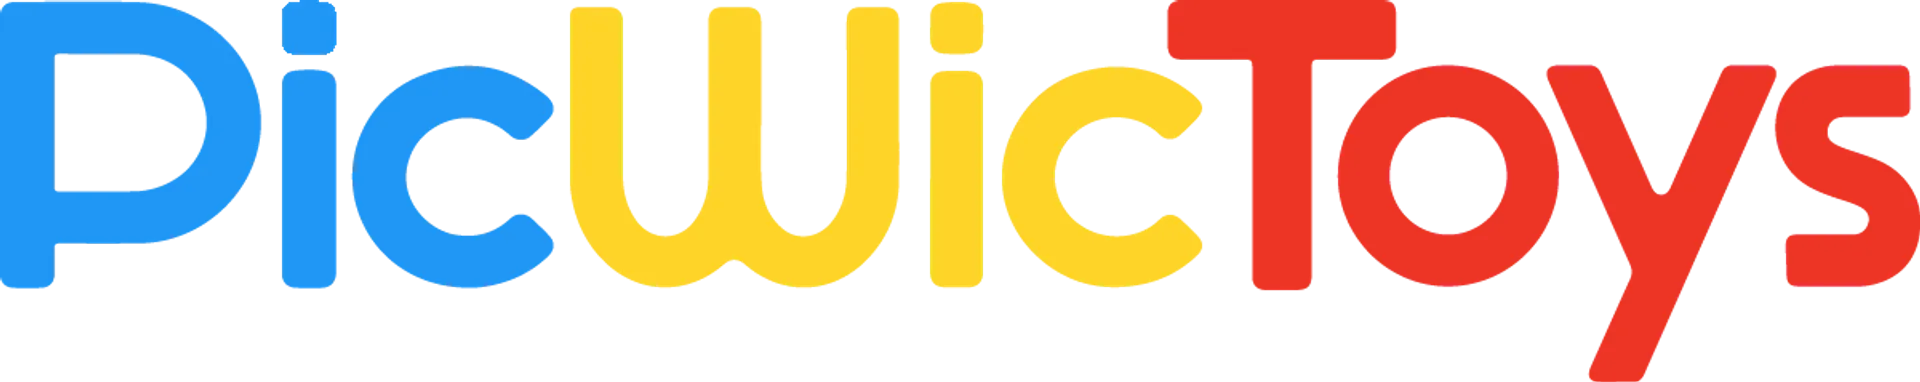 PICWICTOYS logo